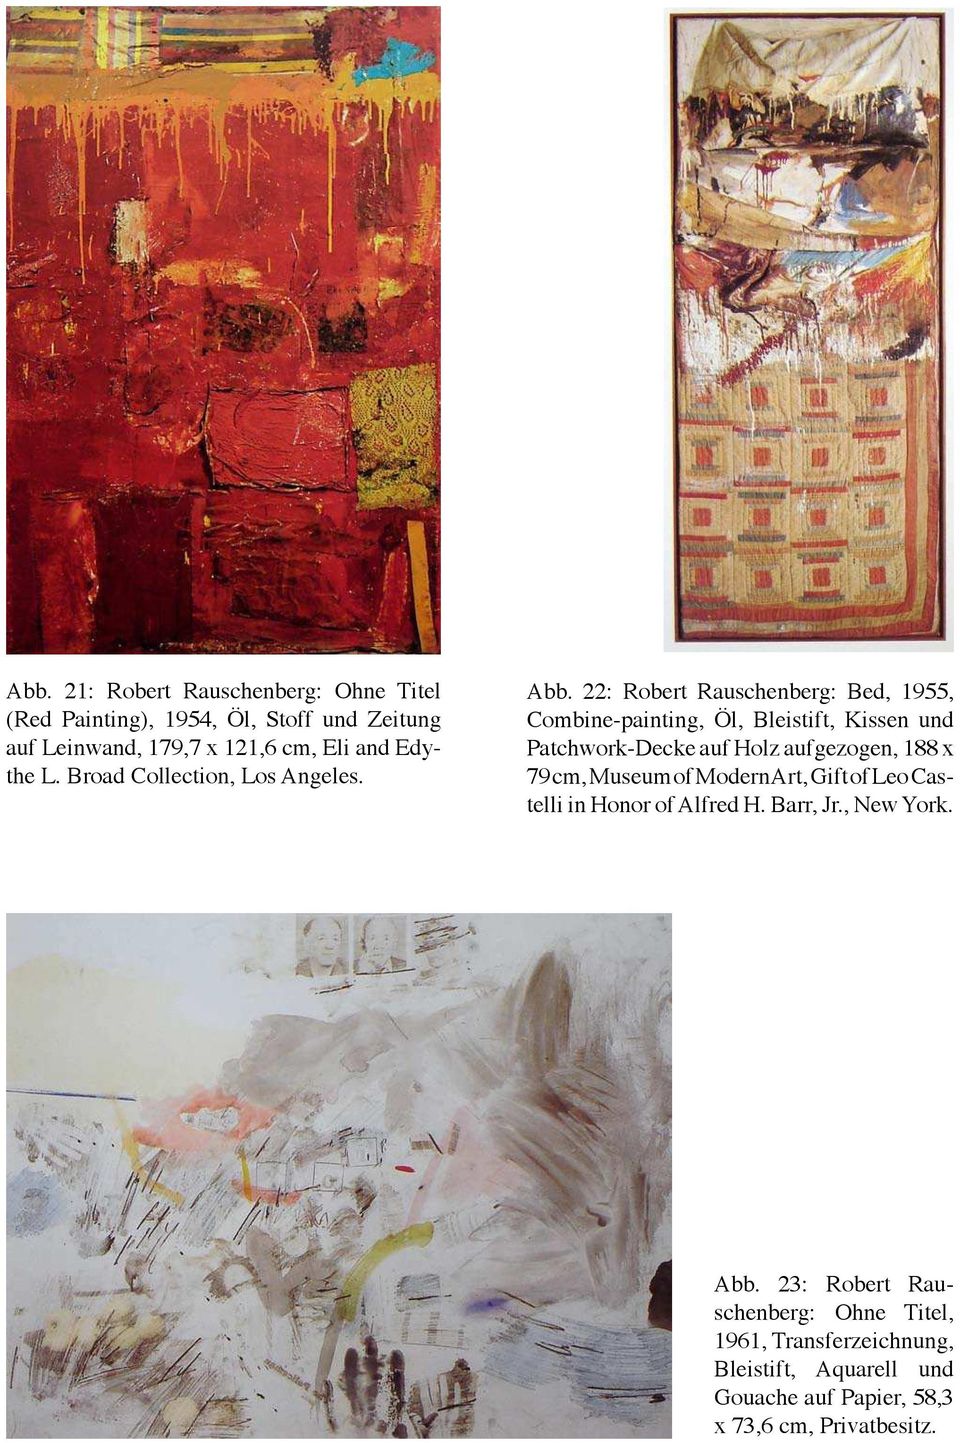 22: Robert Rauschenberg: Bed, 1955, Combine-painting, Öl, Bleistift, Kissen und Patchwork-Decke auf Holz aufgezogen, 188 x 79 cm,